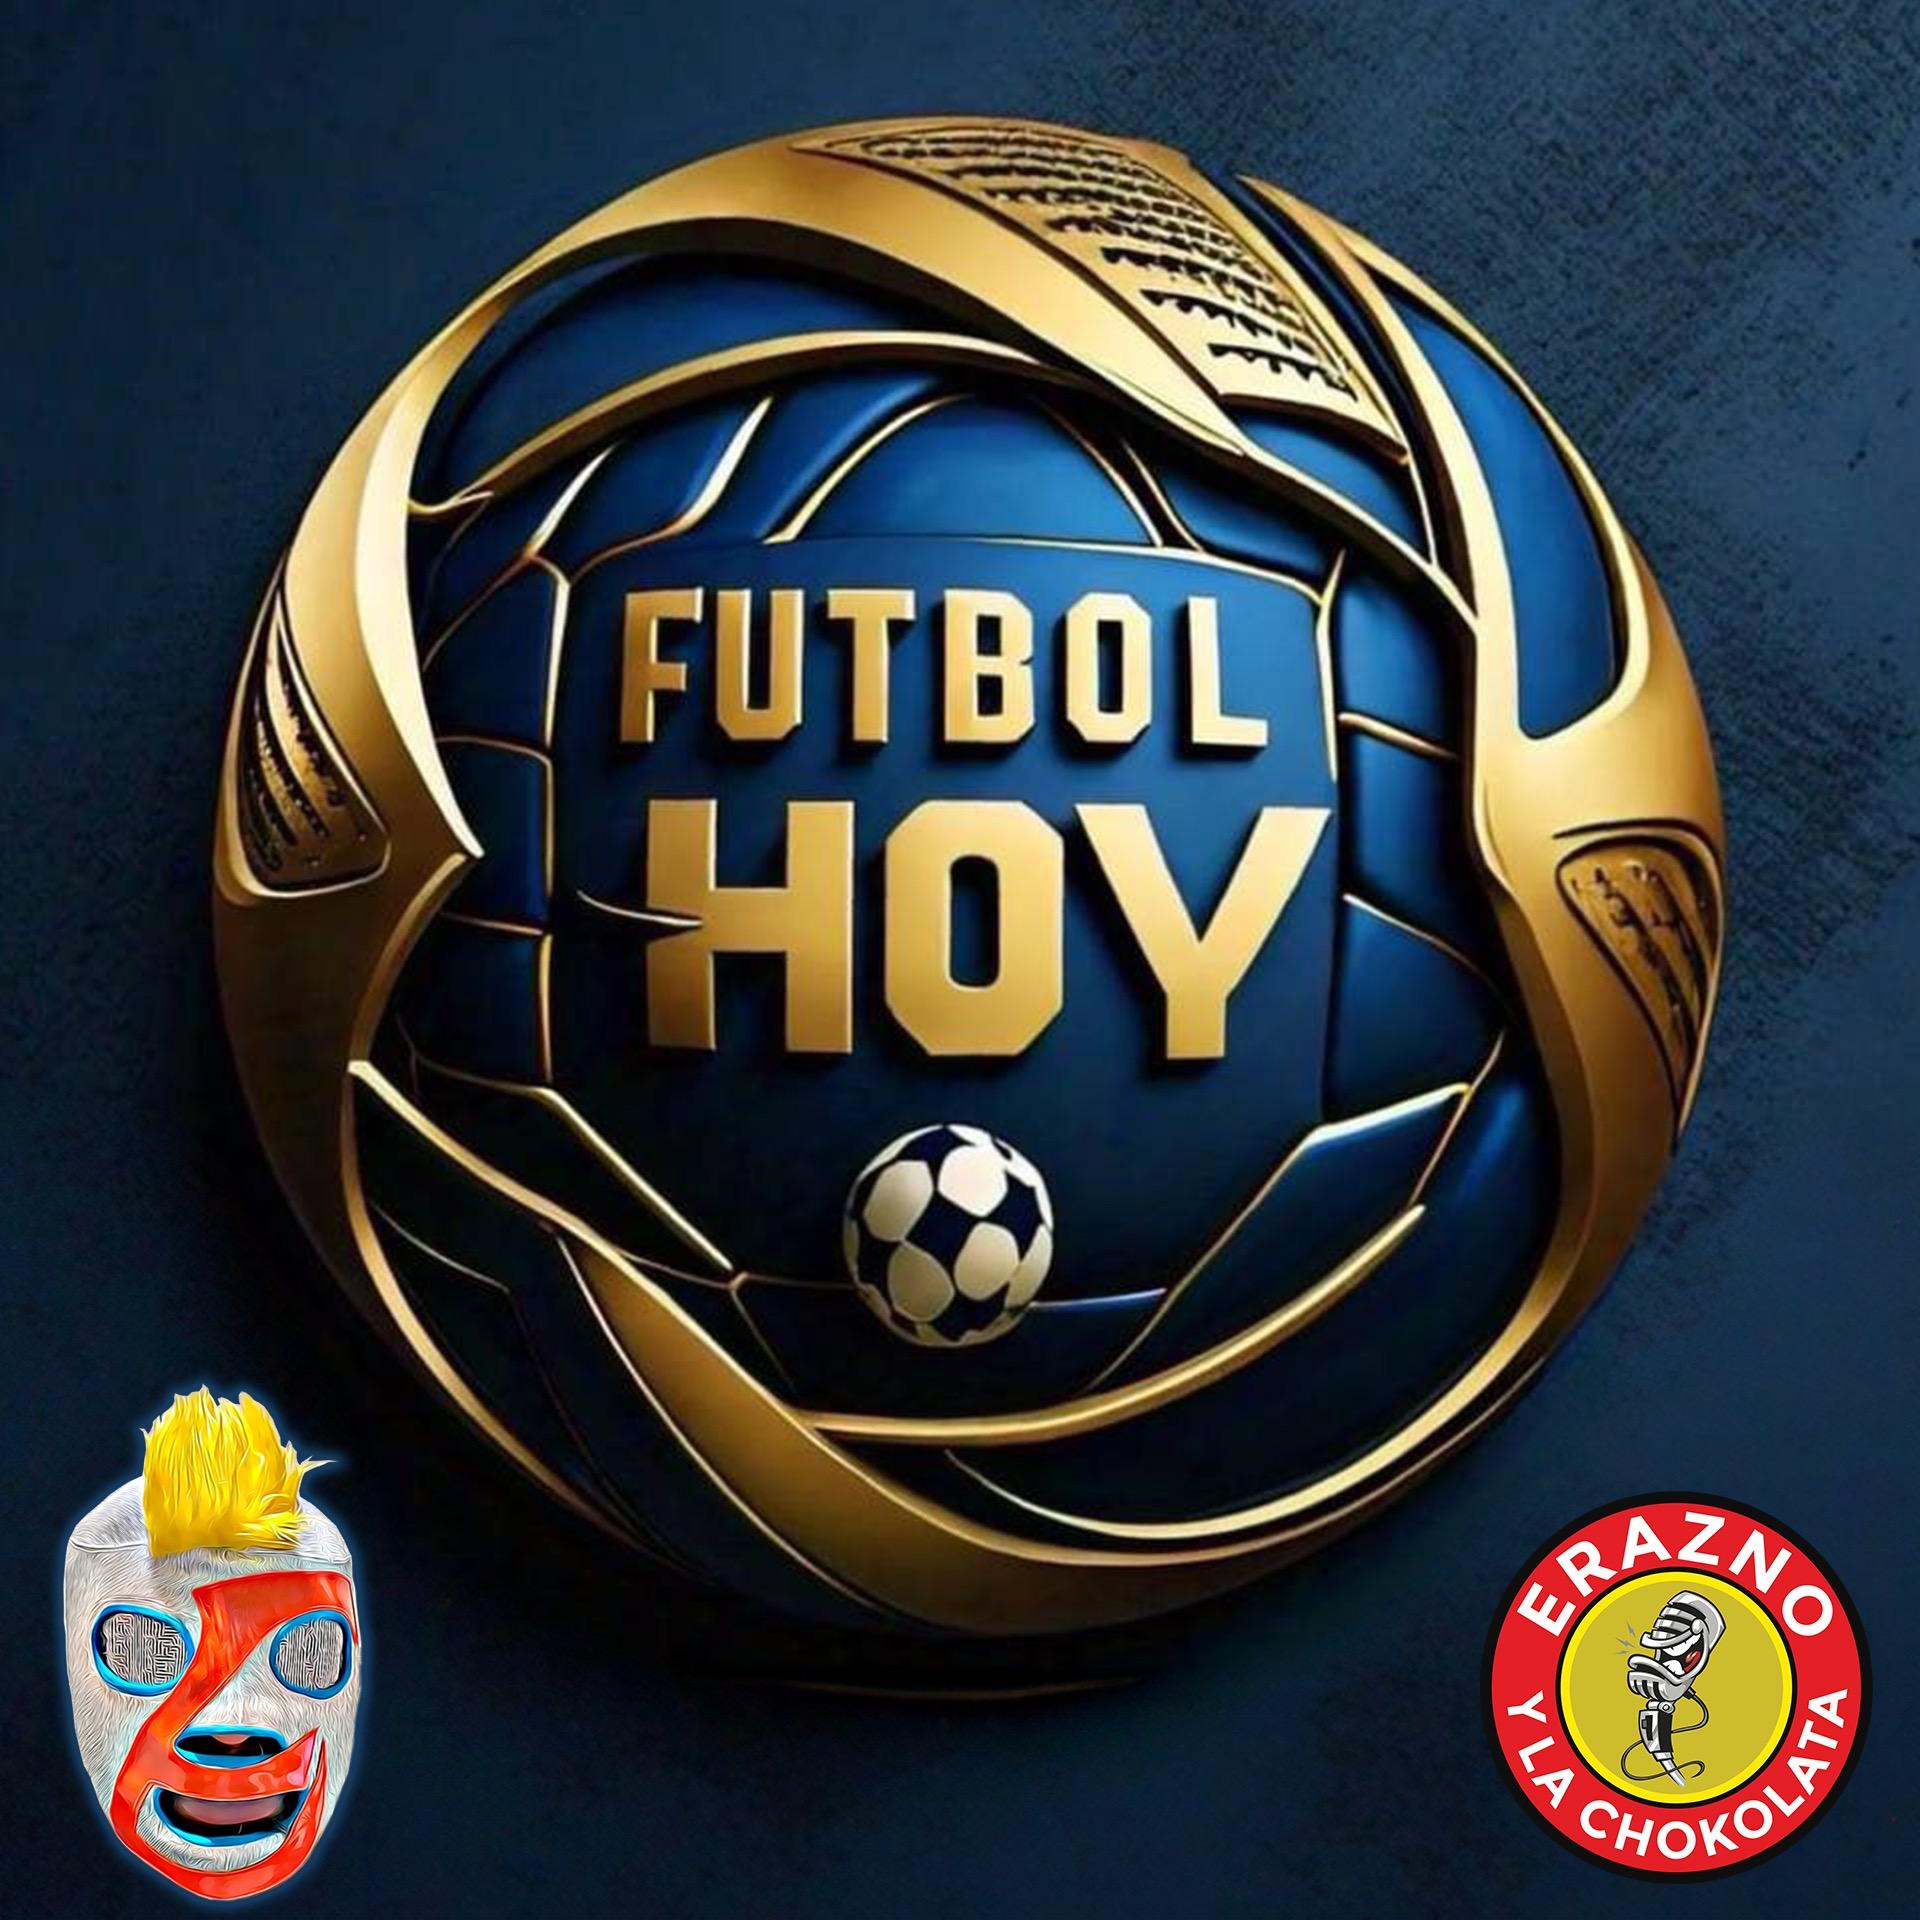 Show poster of Futbol Hoy